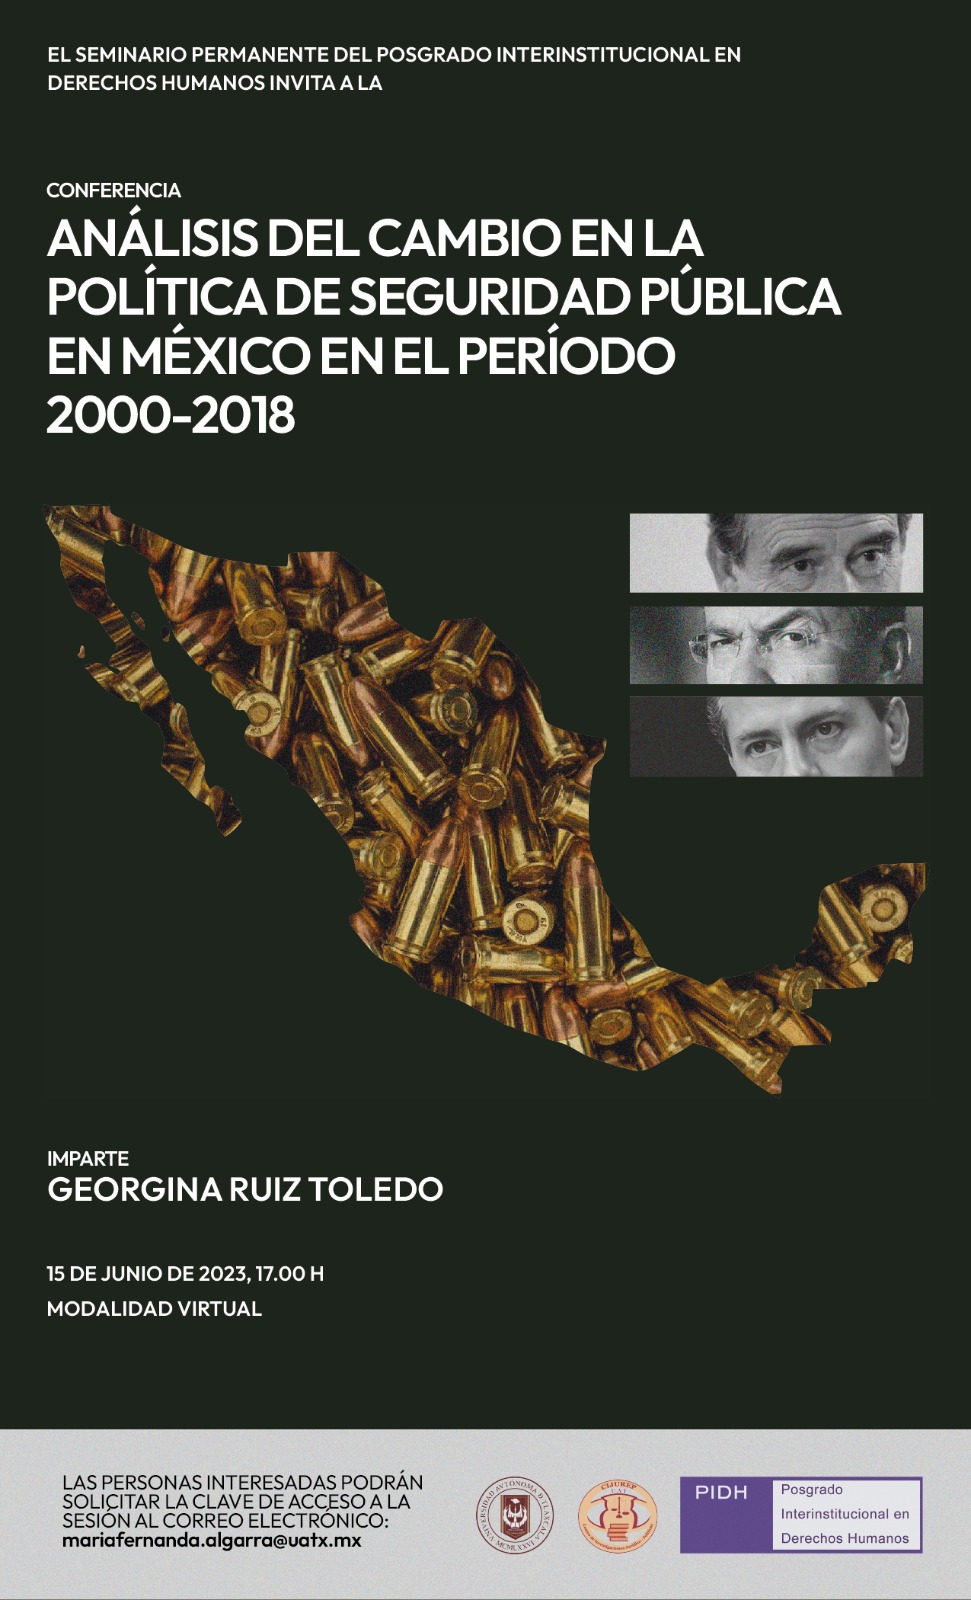 Analisis del cambio en la politica de seguridad publica en Mexico en el periodo 2000-2018